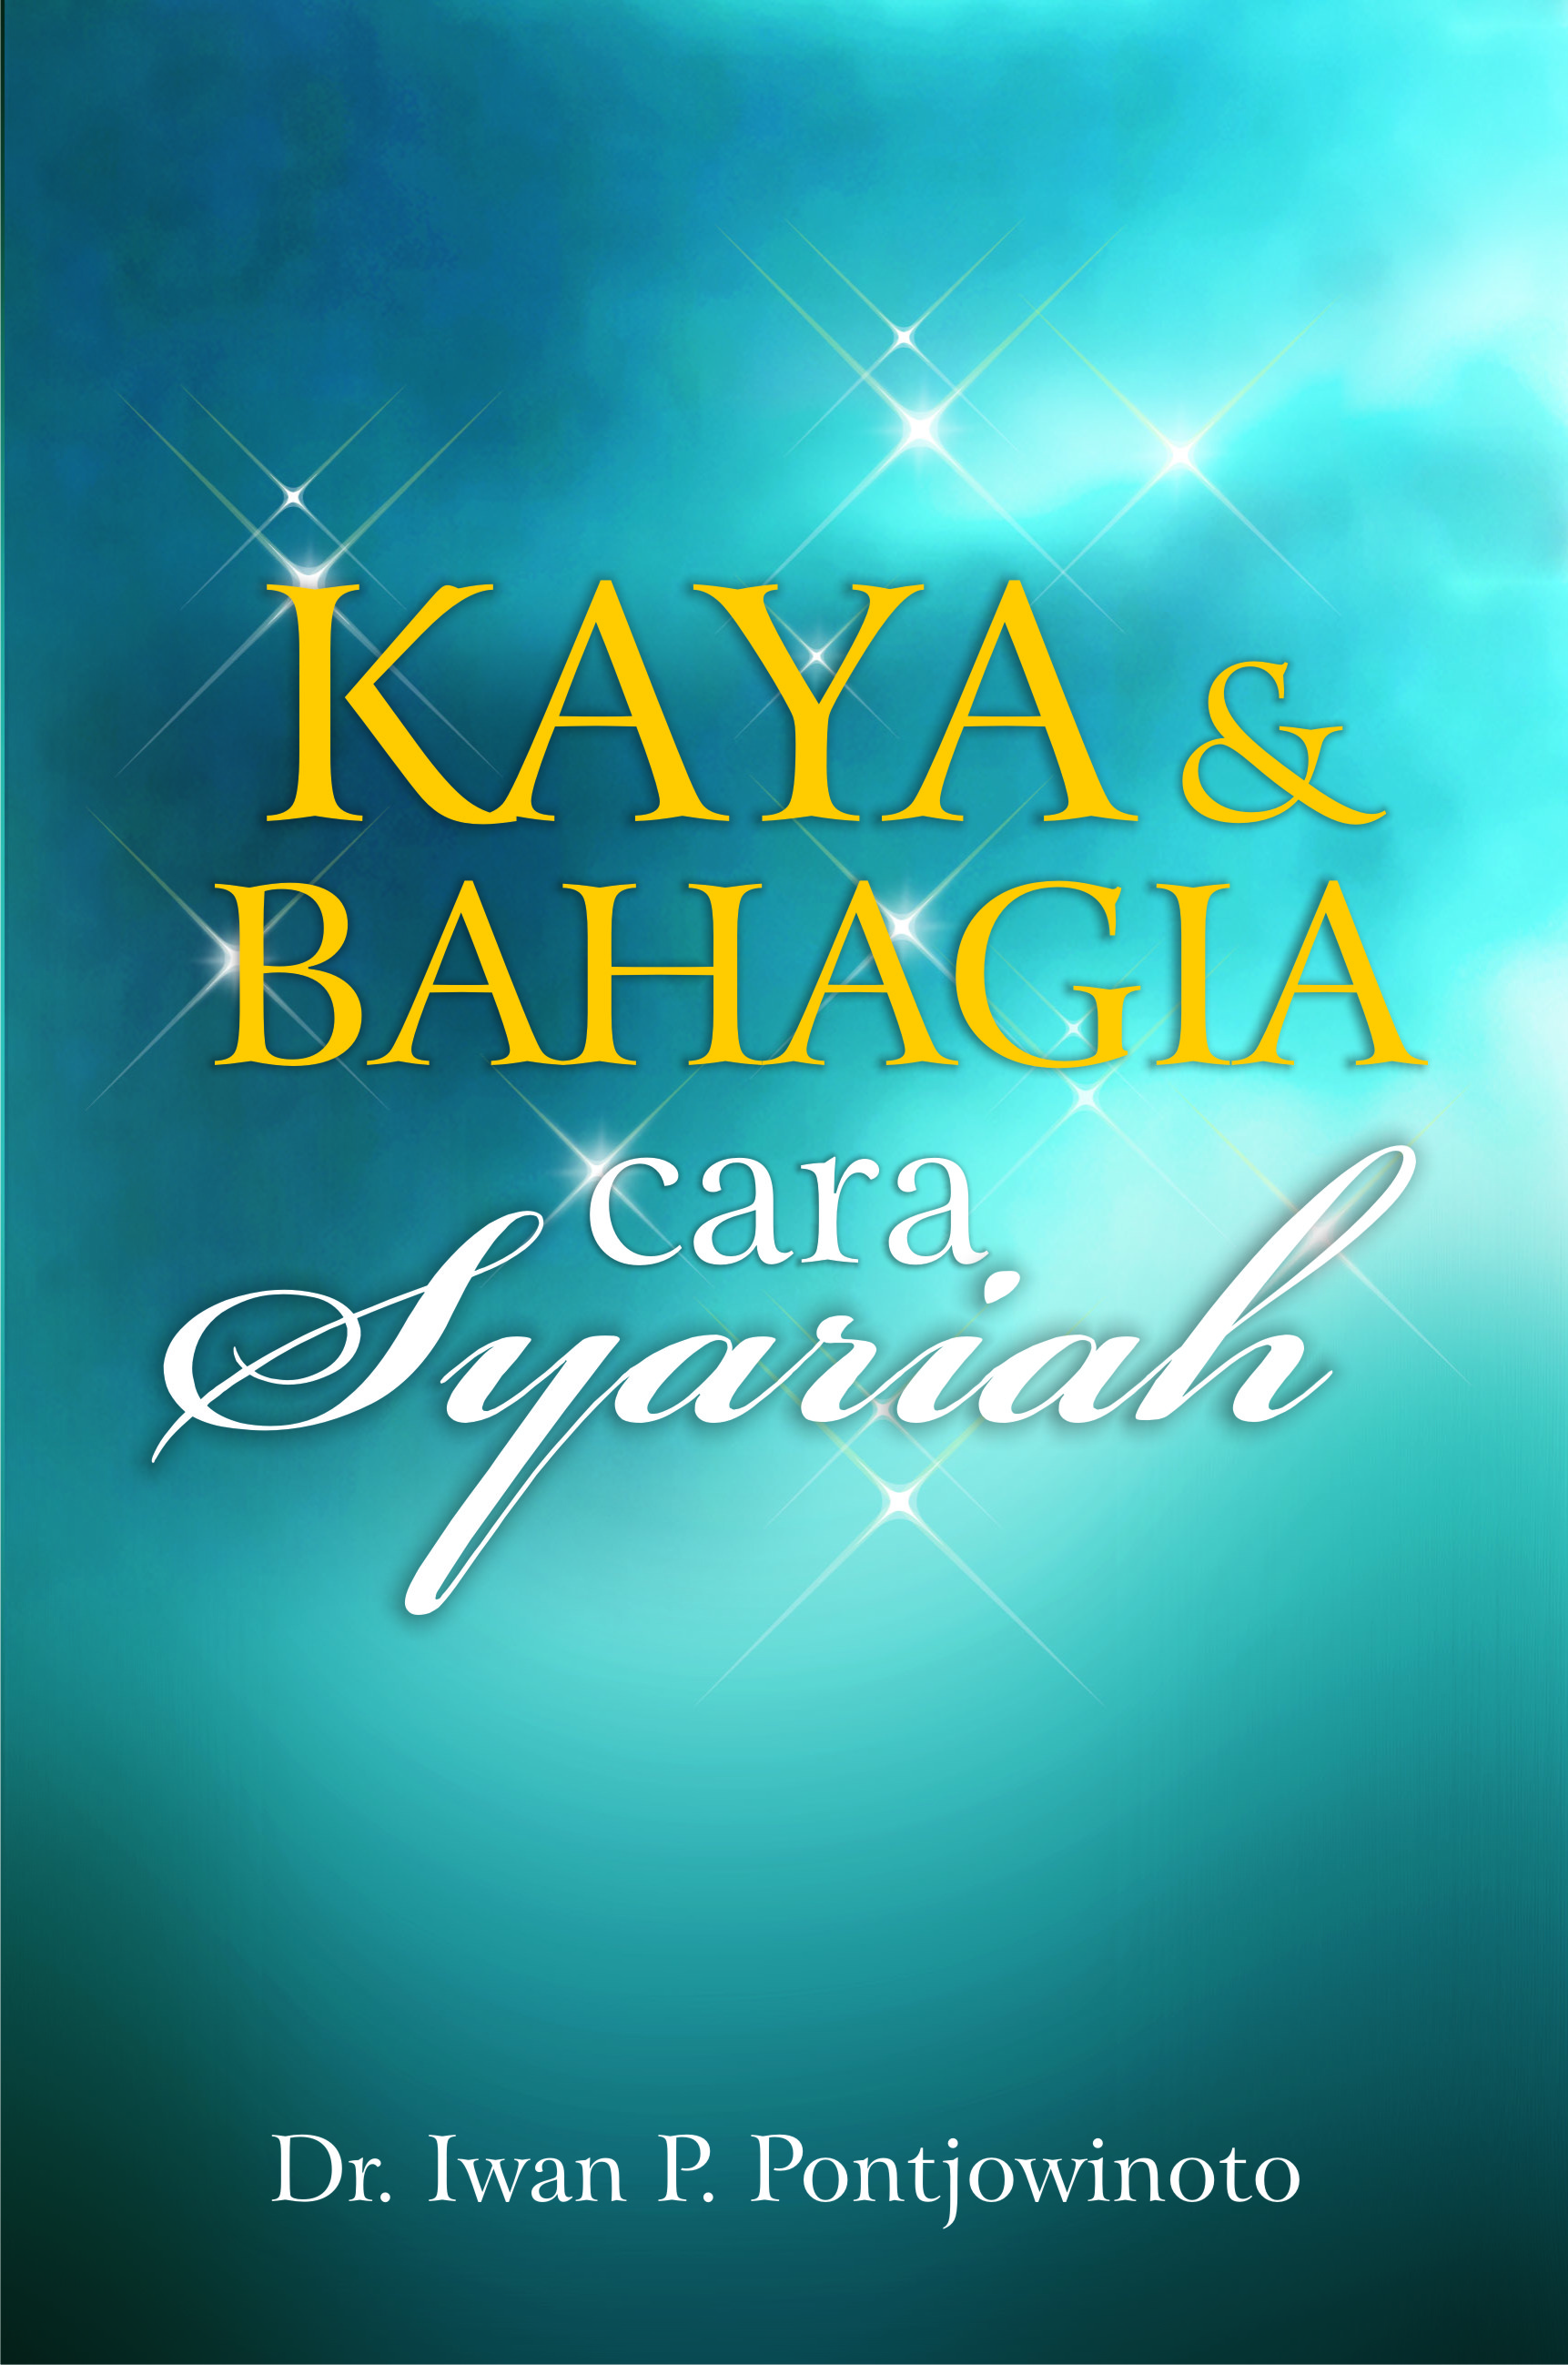 KAYA&BAHAGIA CARA SYARIAH